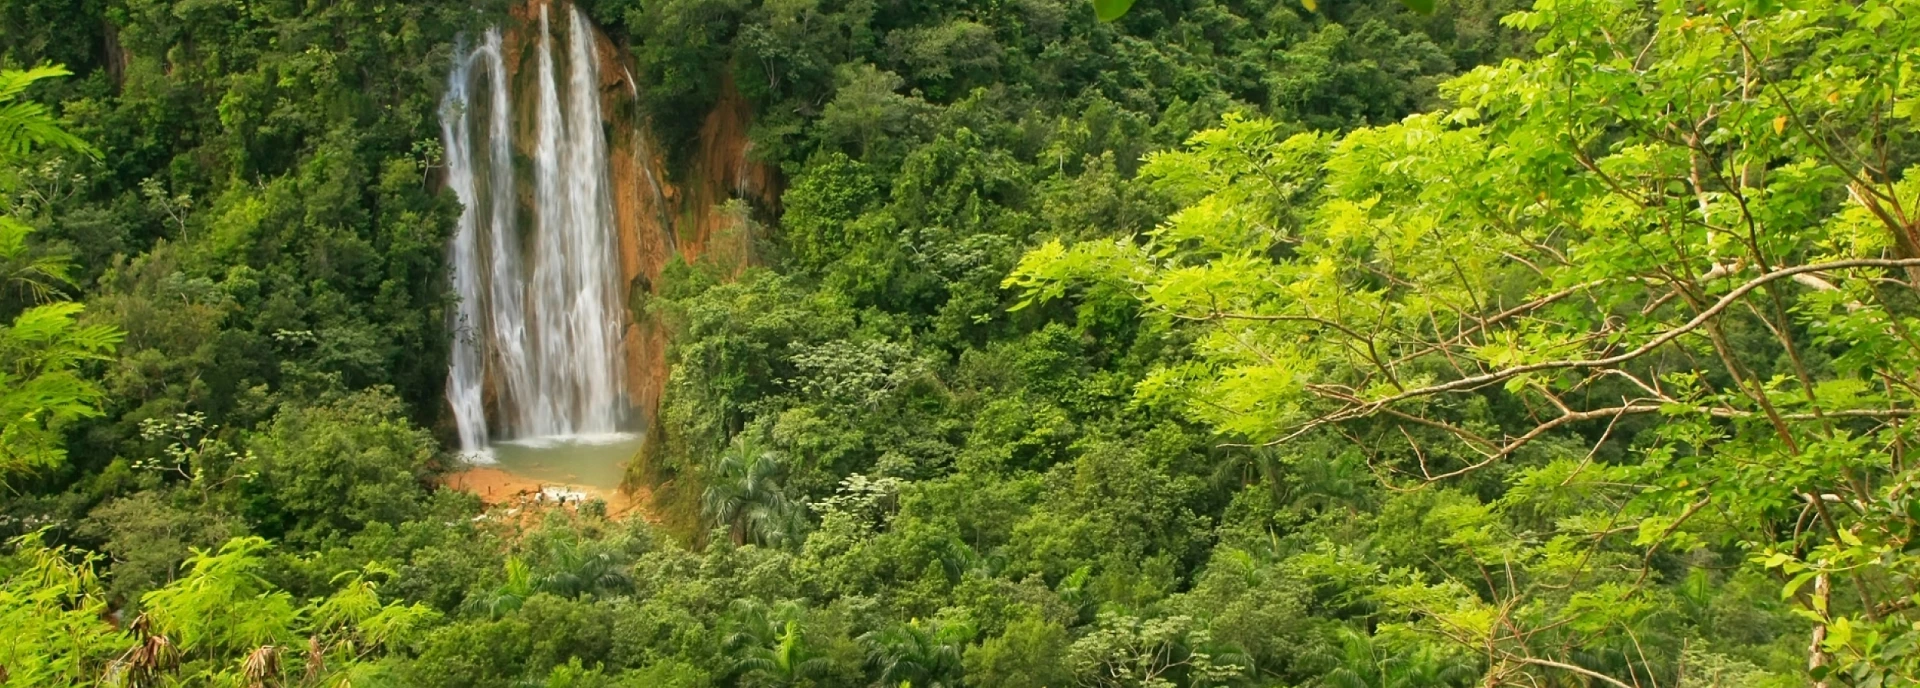 Parque Nacional Los Haitises: un viaje por ecosistemas